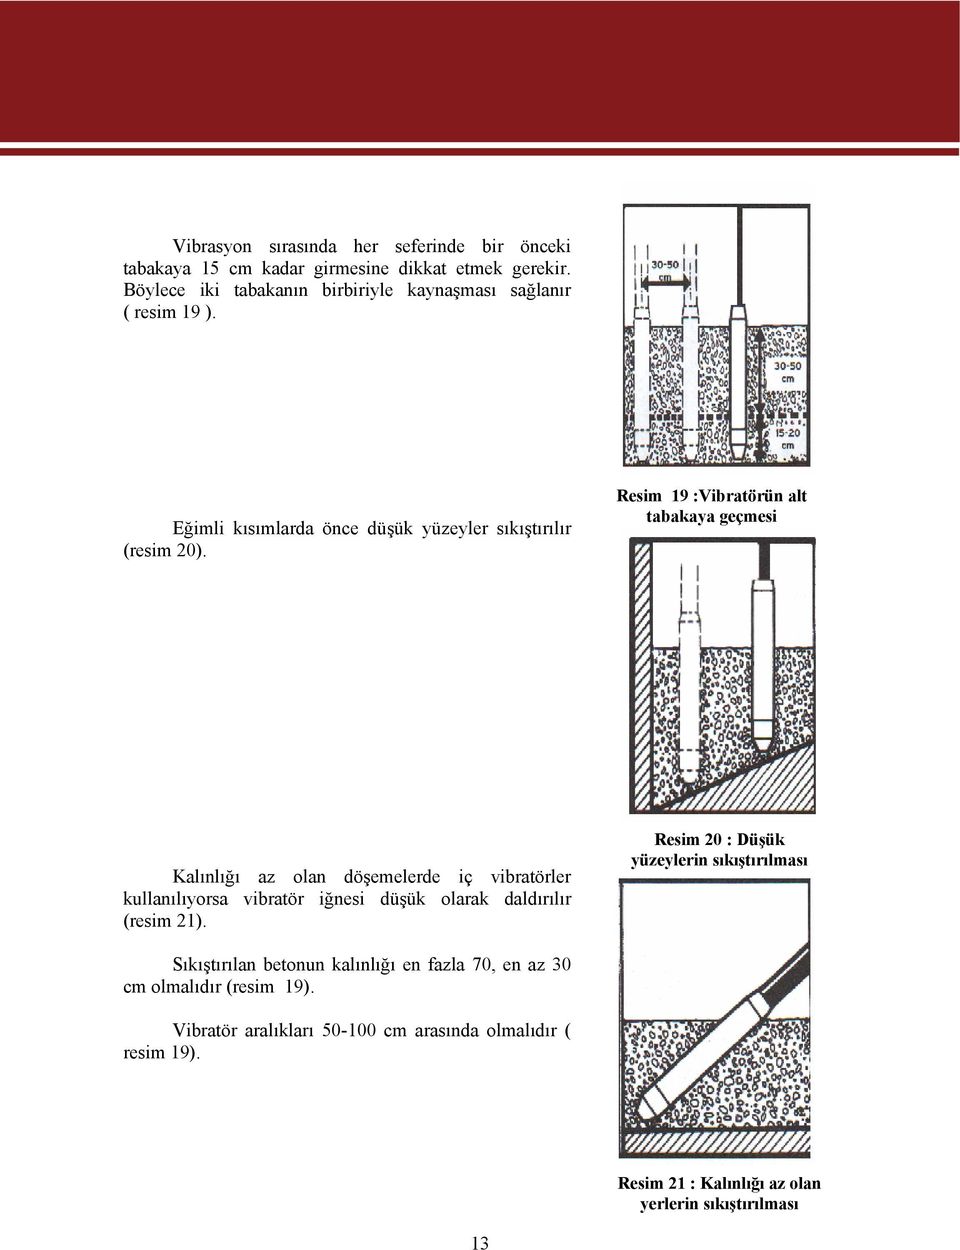 Resim 19 :Vibratörün alt tabakaya geçmesi Kalınlığı az olan döşemelerde iç vibratörler kullanılıyorsa vibratör iğnesi düşük olarak daldırılır (resim 21).